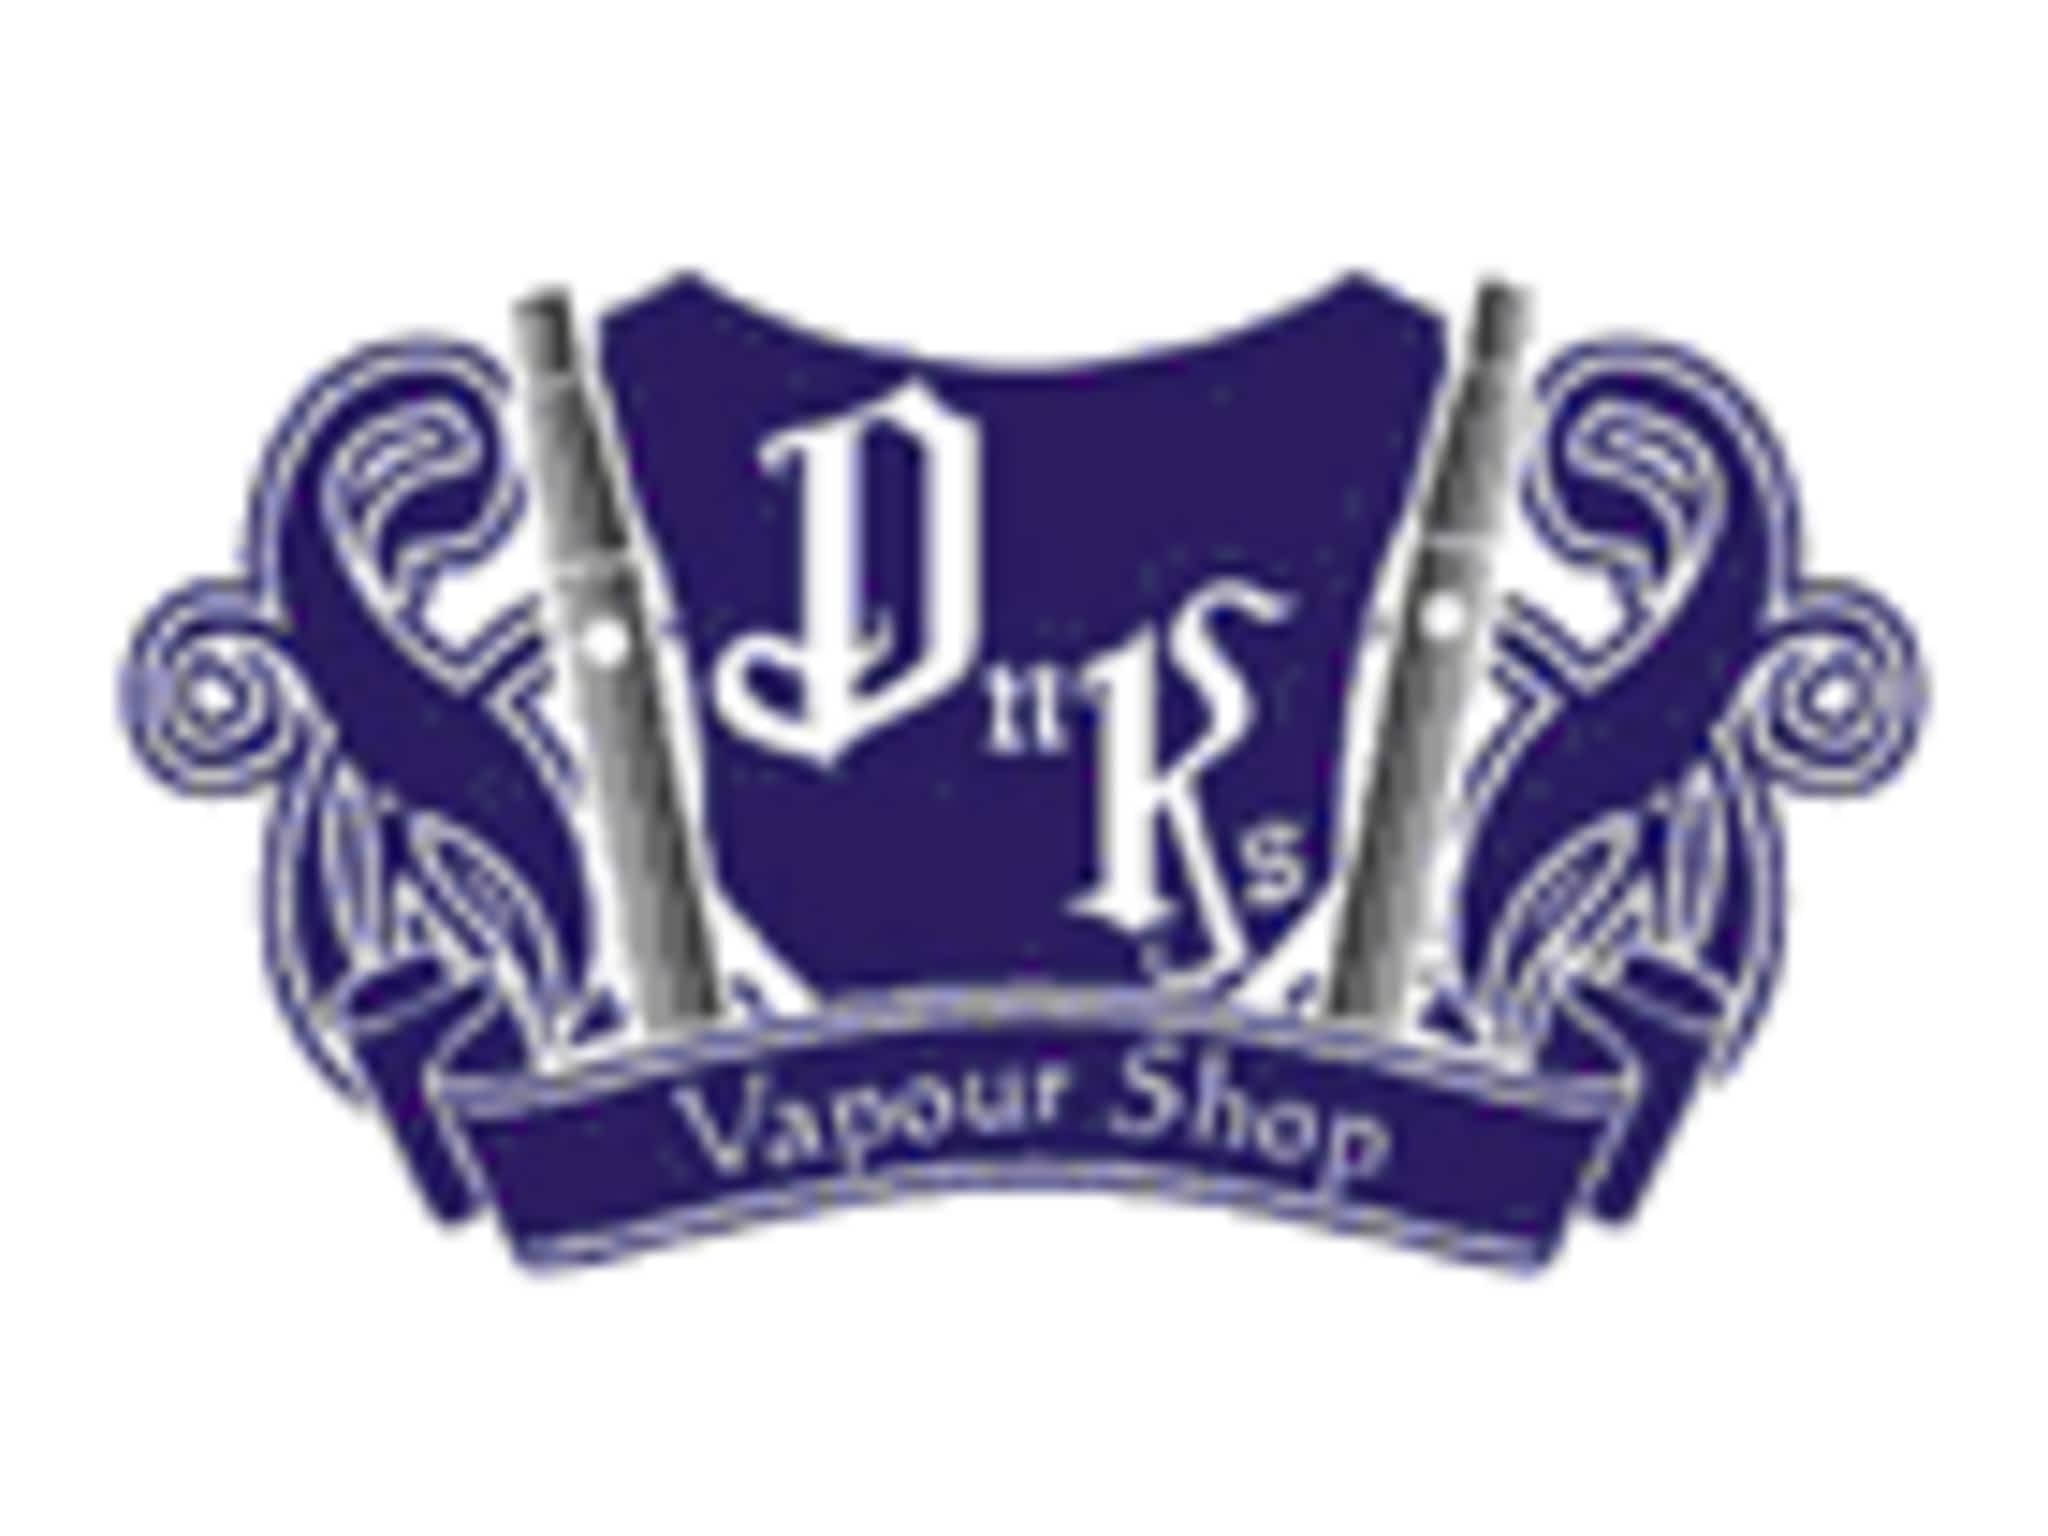 photo DnK's Vapour Shop